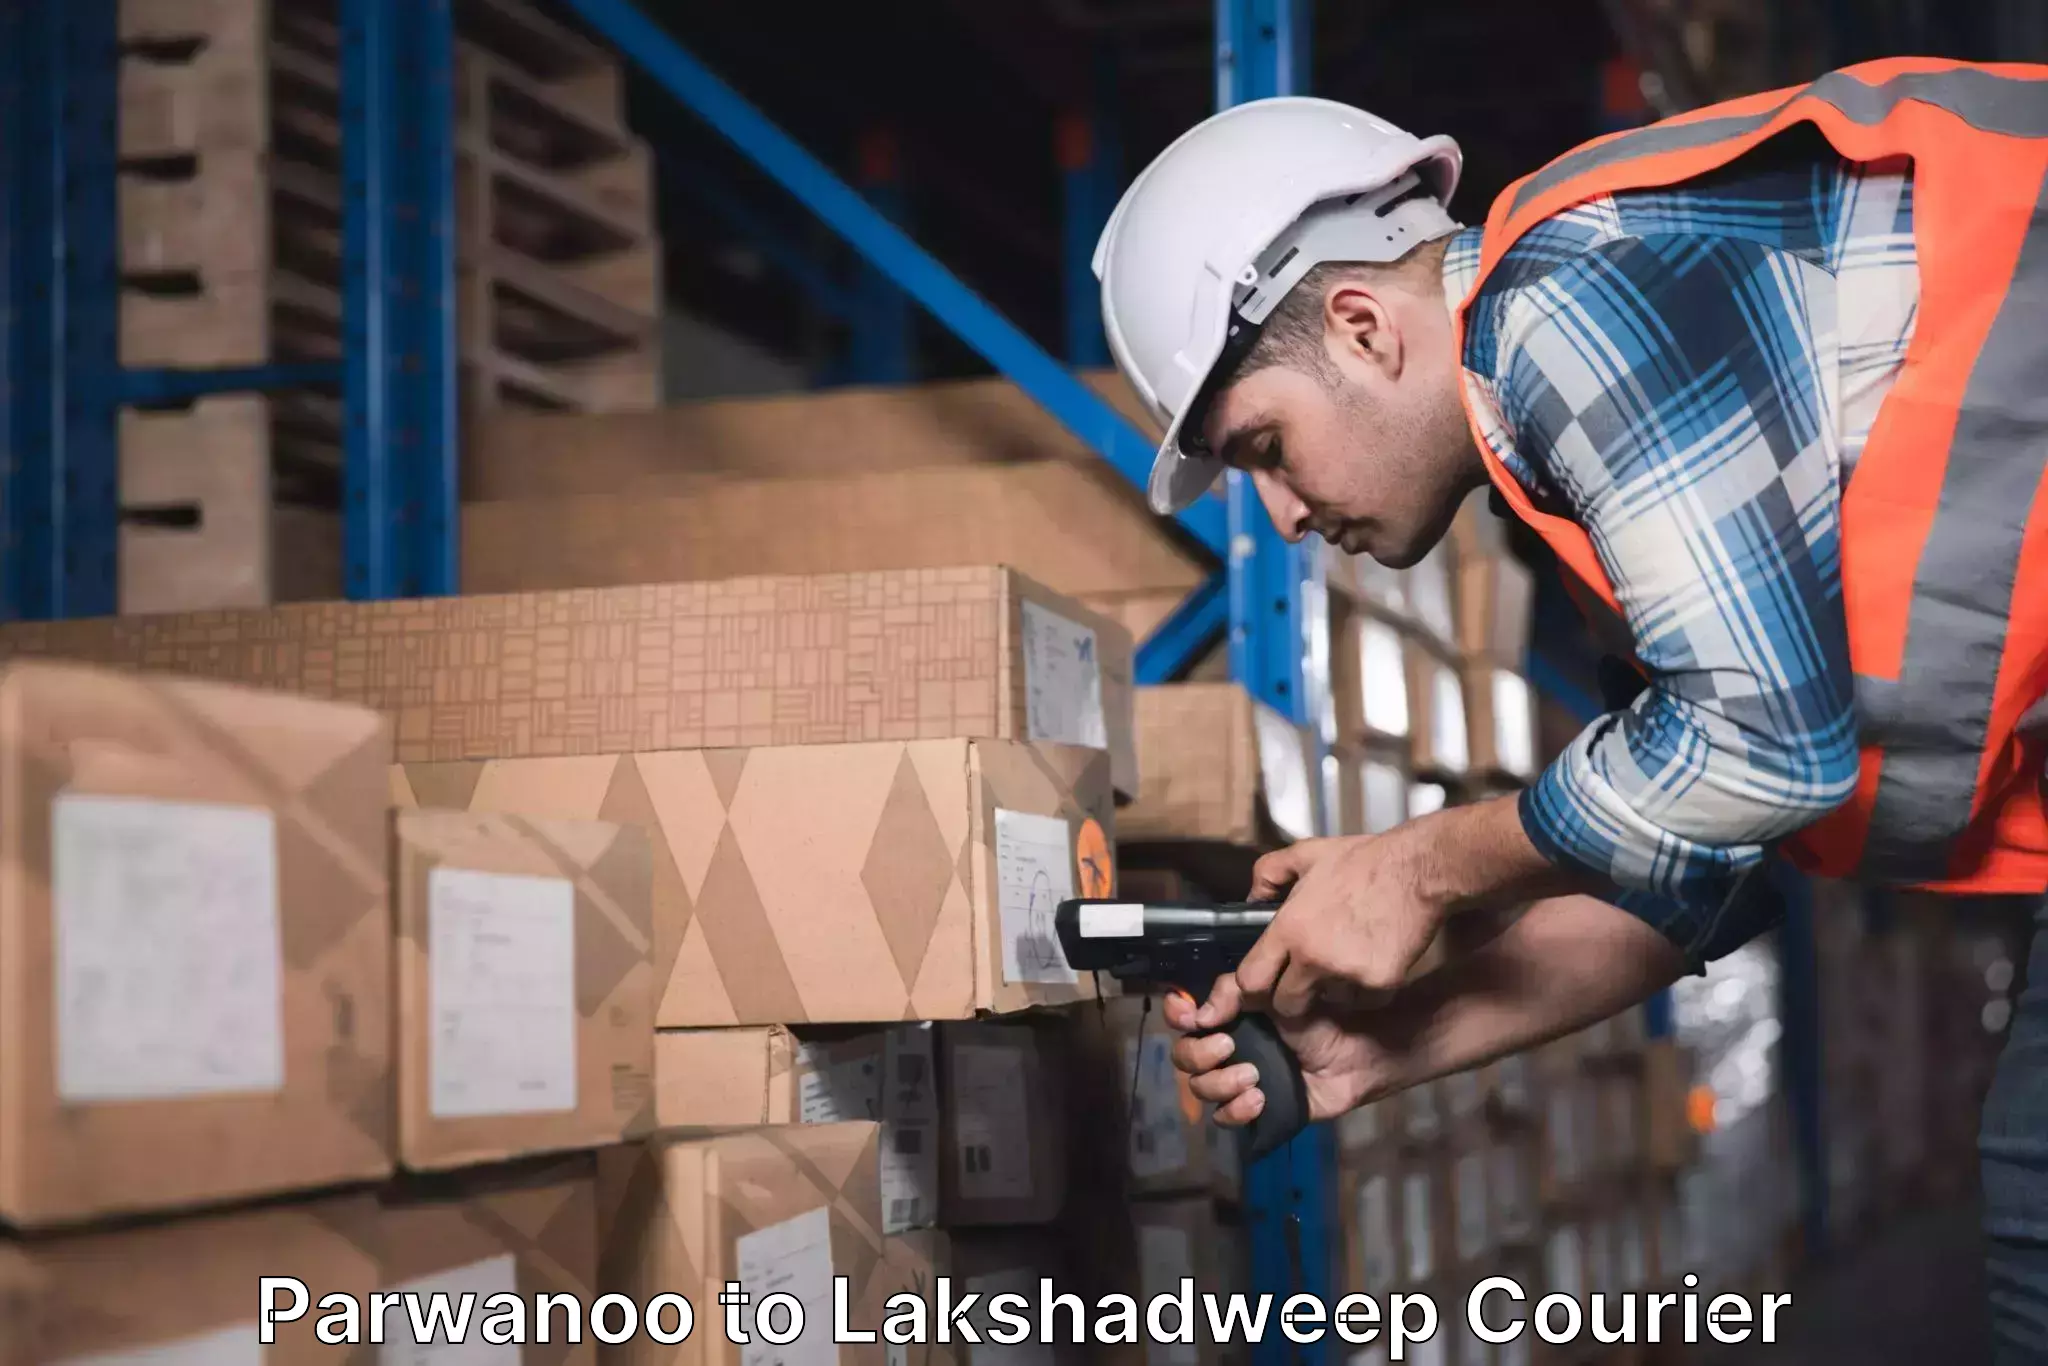 Bulk courier orders Parwanoo to Lakshadweep